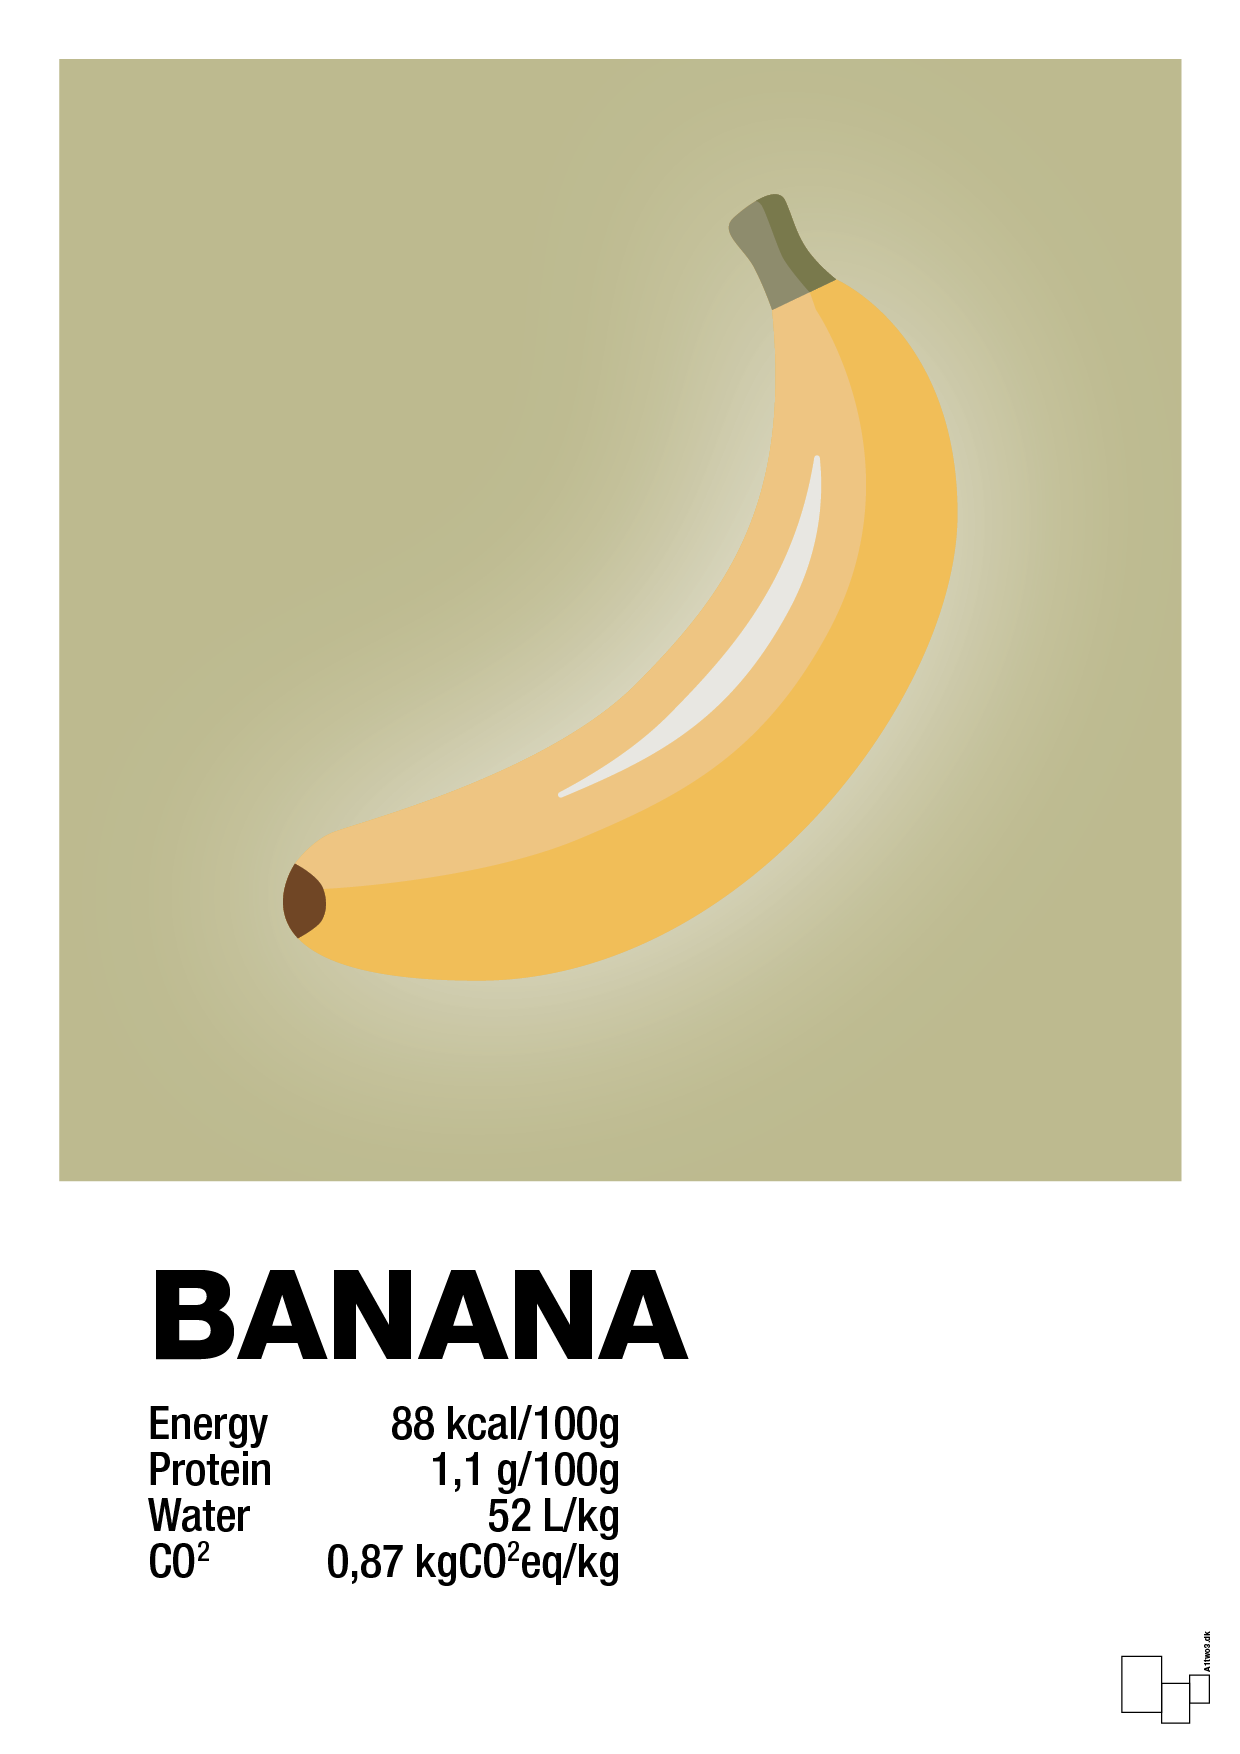 banana nutrition og miljø - Plakat med Mad & Drikke i Back to Nature